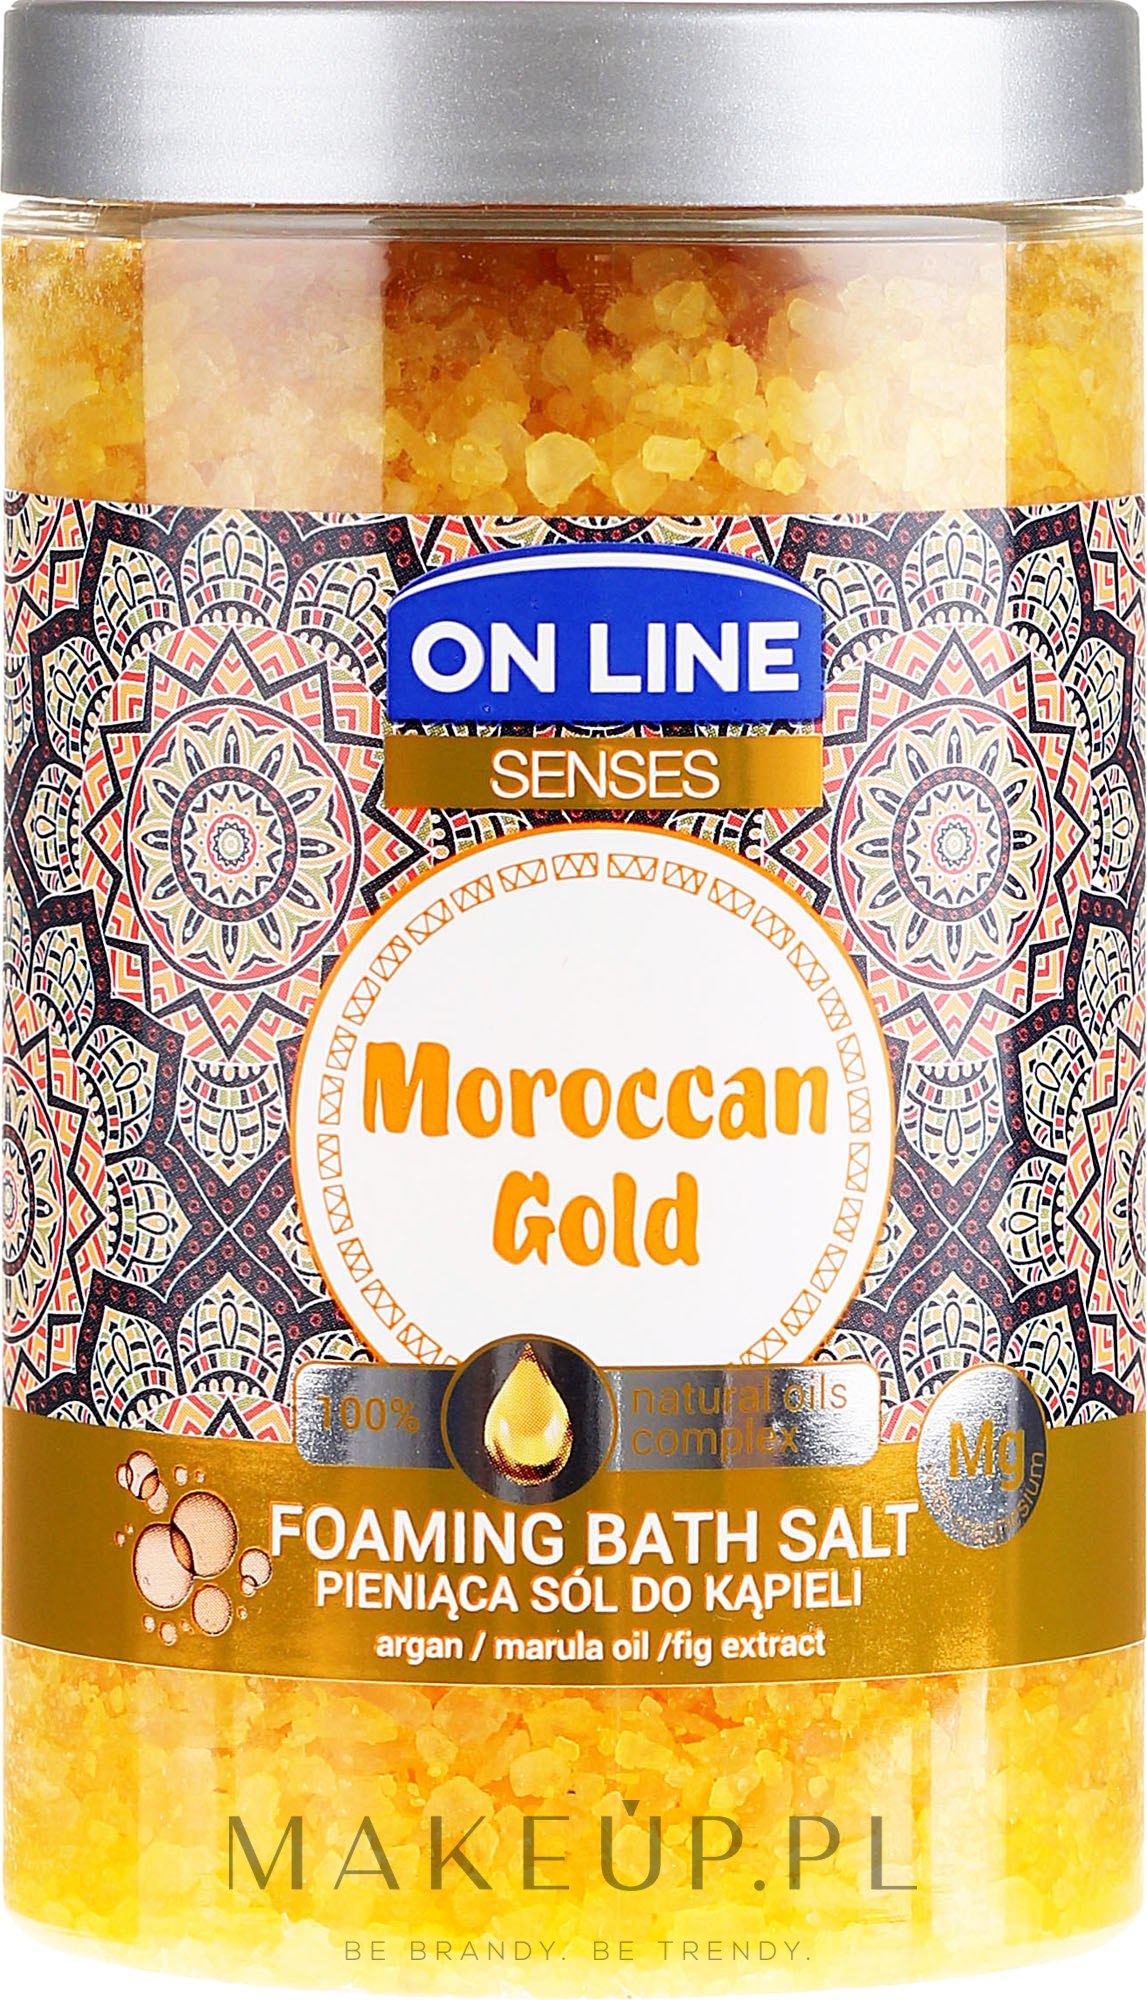 Pieniąca sól do kąpieli z olejami marula i arganowym - On Line Senses Moroccan Gold — Zdjęcie 480 g